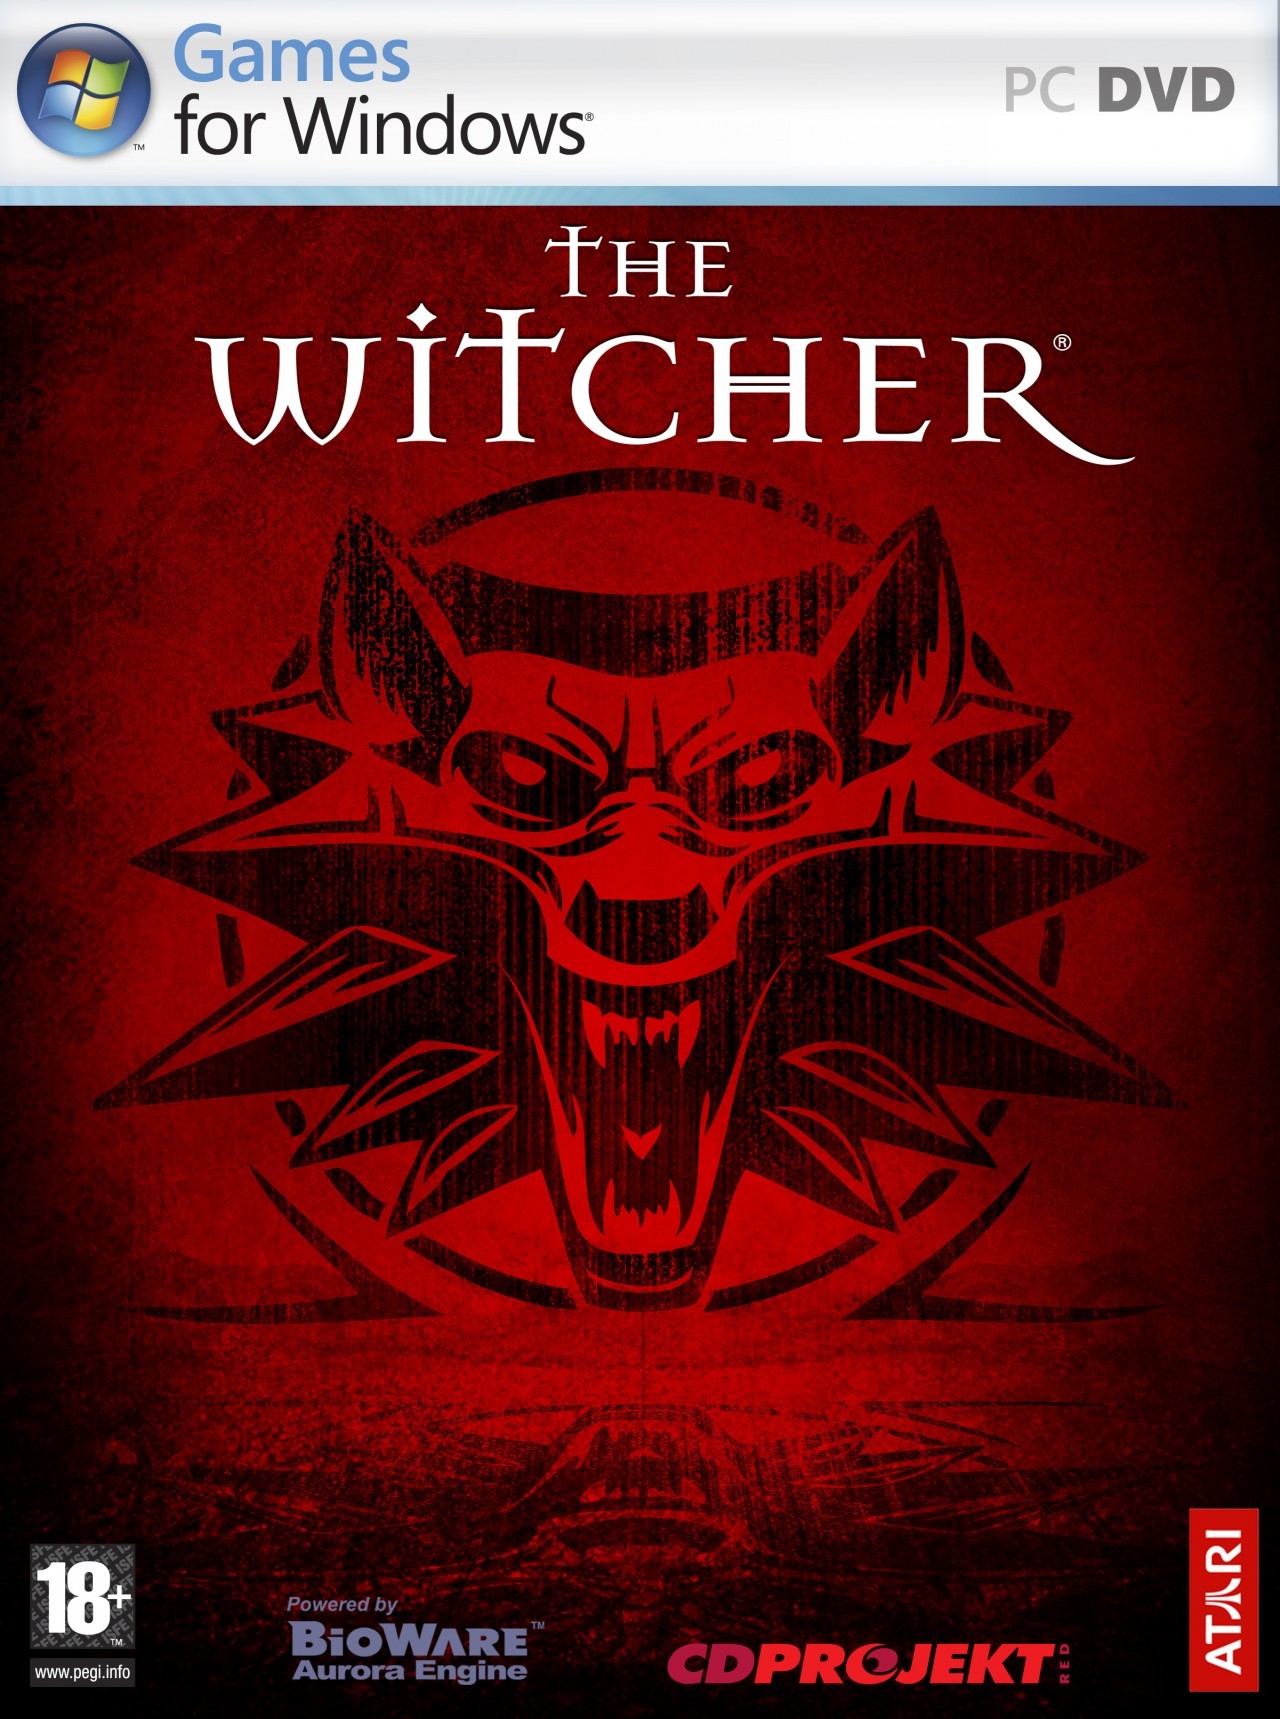 The Witcher 2: Requisitos e novas imagens